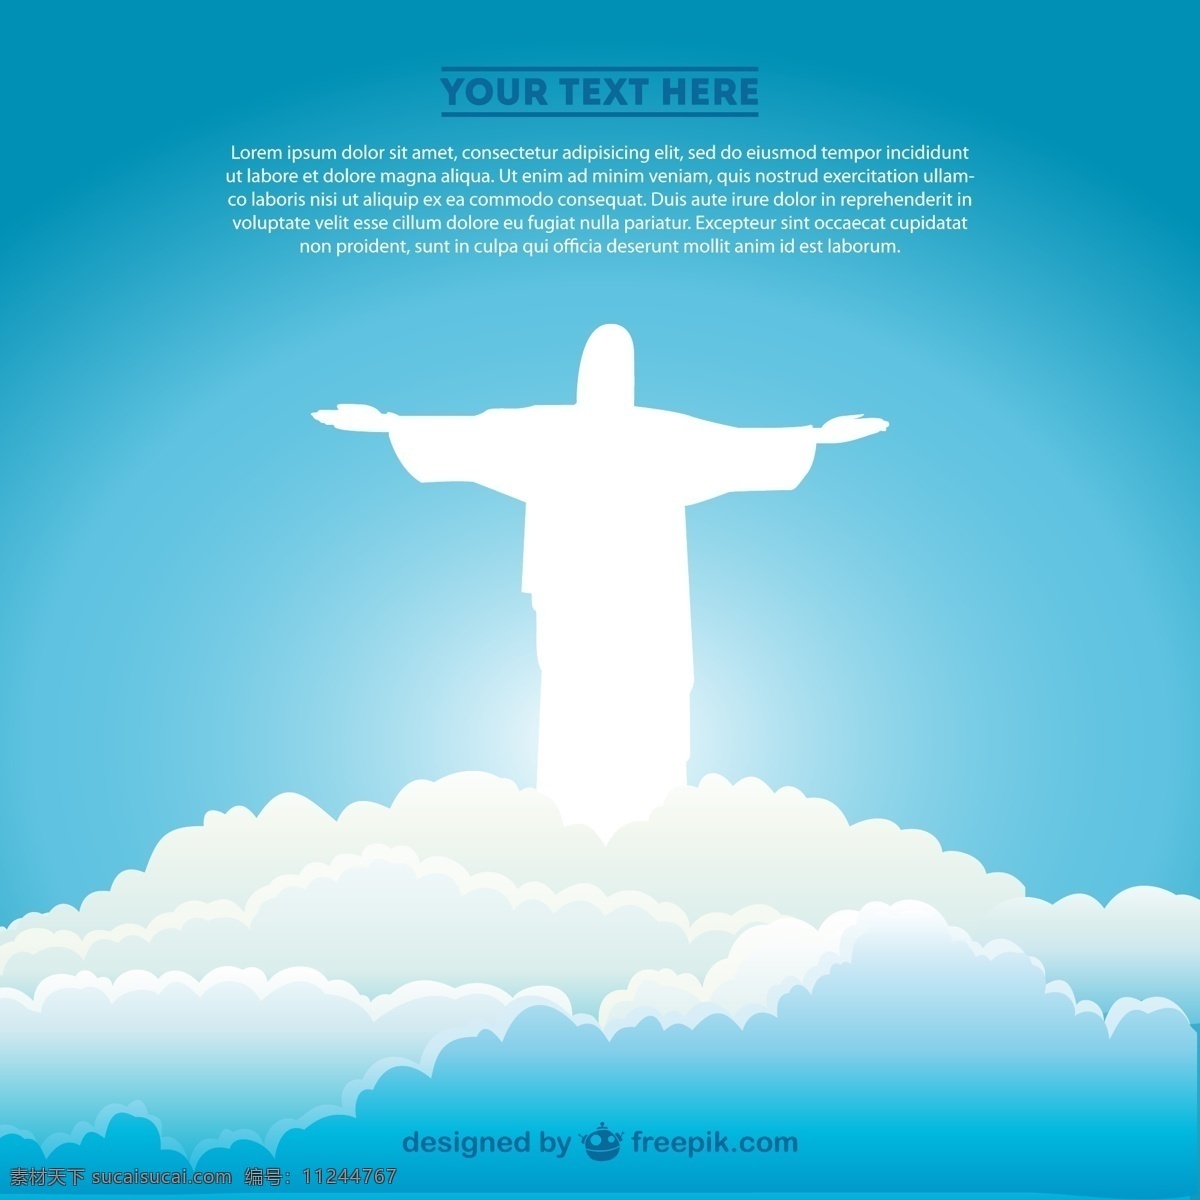 白色 基督 救世主 轮廓 云 里 背景 海报 抽象 天空 模板 艺术 天 壁纸 图形 布局 平面设计 巴西 插图 符号 海报模板 青色 天蓝色